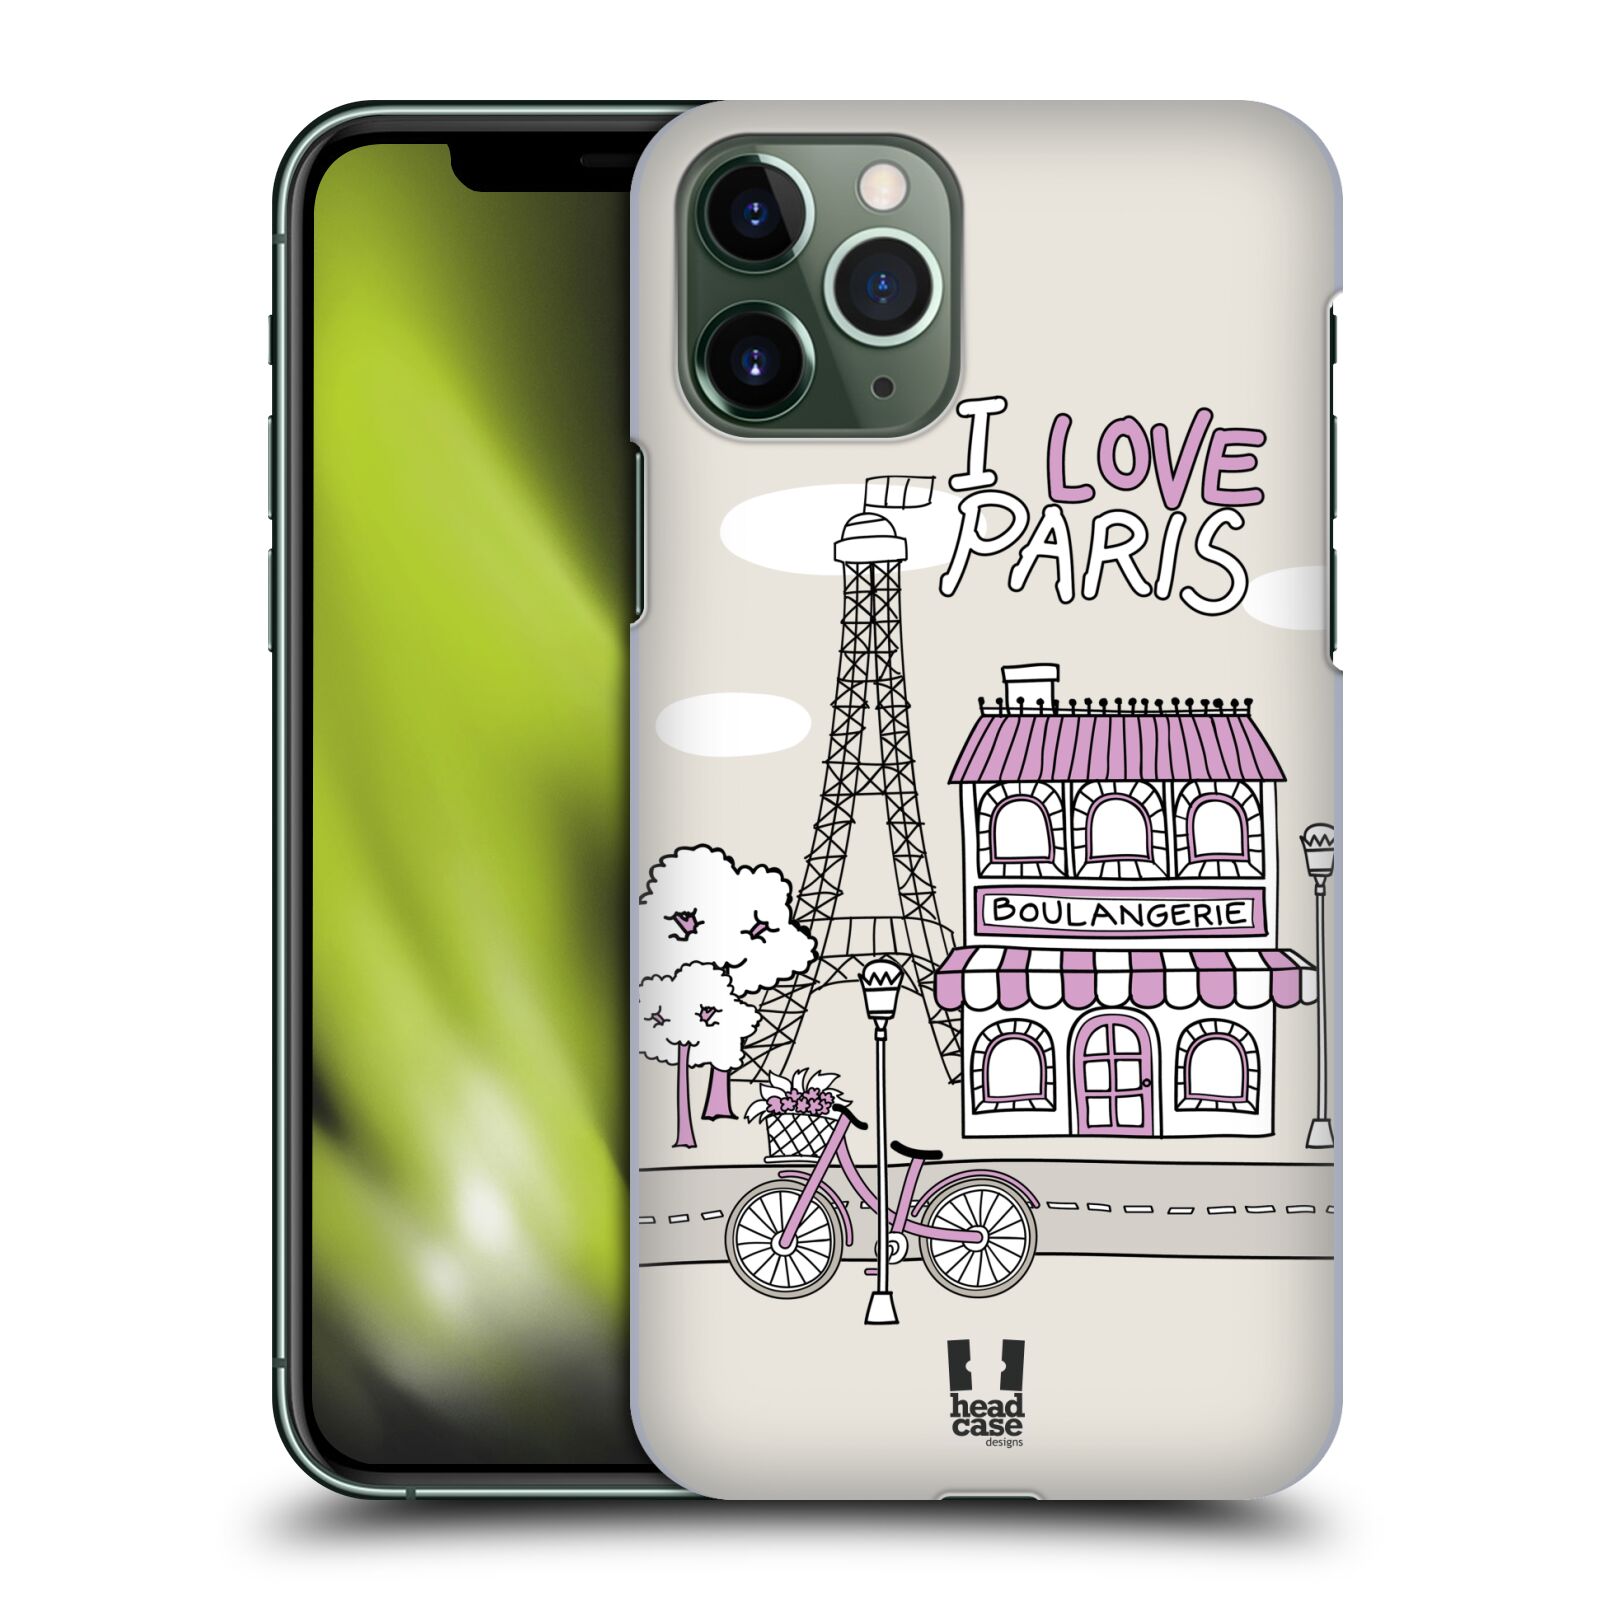 Pouzdro na mobil Apple Iphone 11 PRO - HEAD CASE - vzor Kreslená městečka FIALOVÁ, Paříž, Francie, I LOVE PARIS